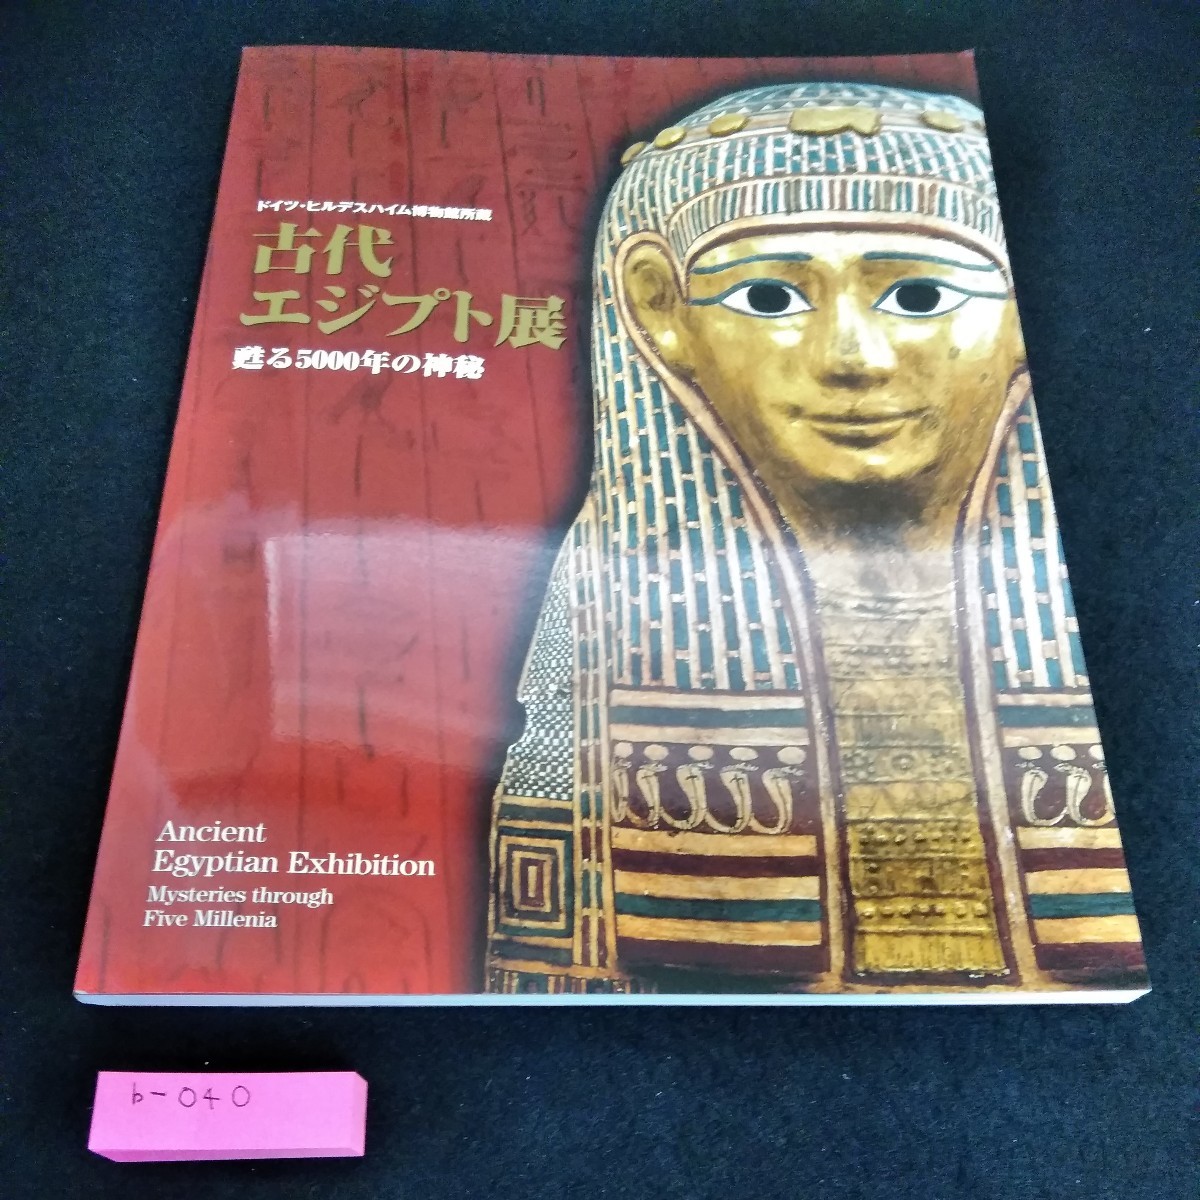 b-040 Ausstellung zum Alten Ägypten des Hildesheimer Museums in Deutschland: Wiederbelebung 5, 000 Jahre Mysterium*6, Malerei, Kunstbuch, Sammlung, Katalog